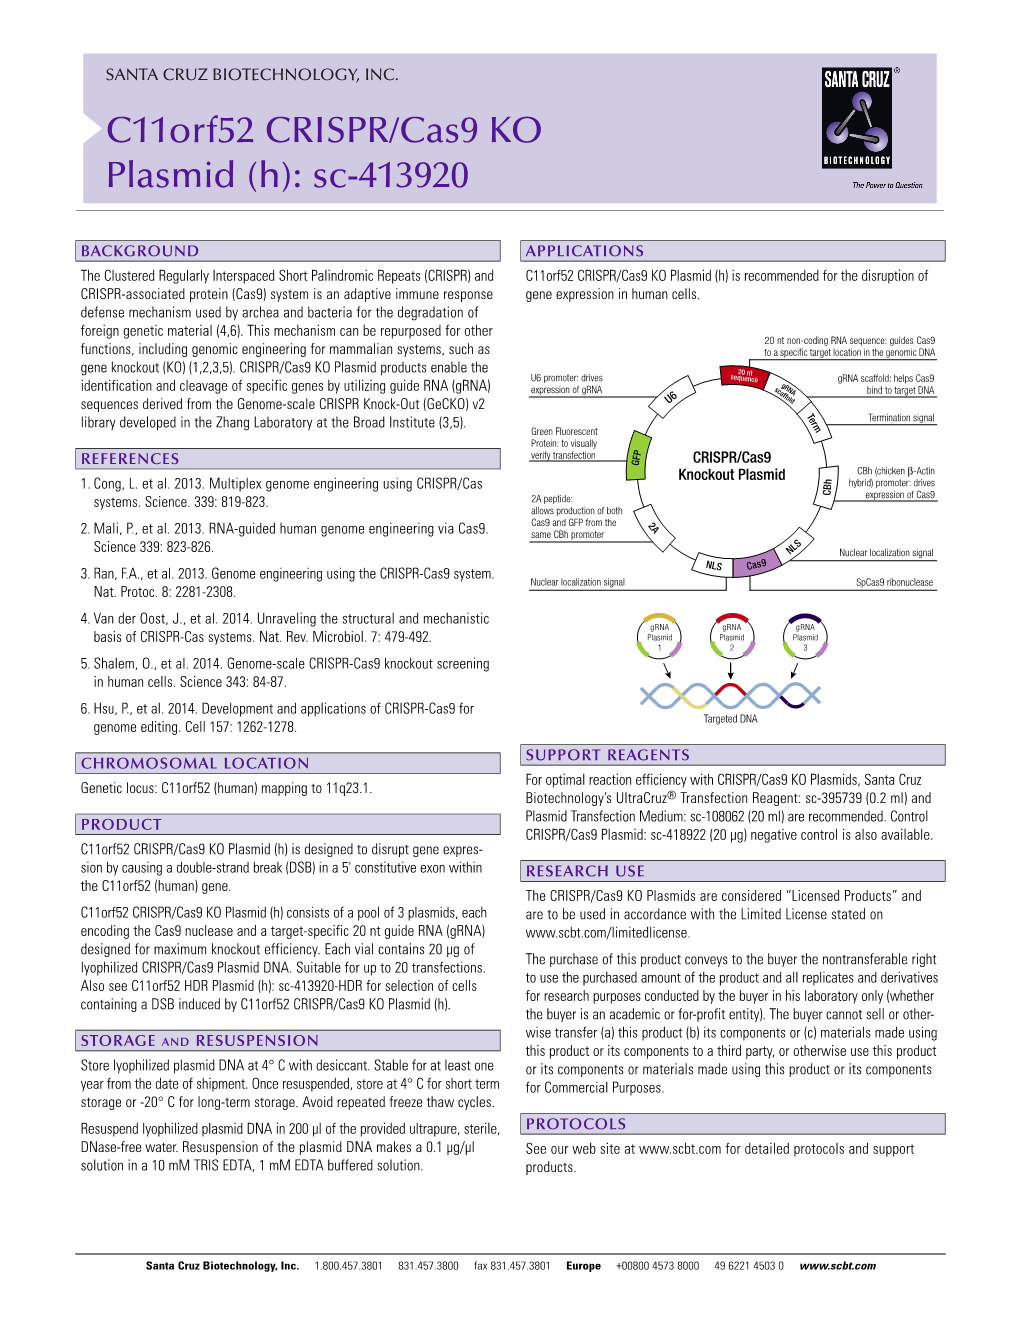 C11orf52 CRISPR/Cas9 KO Plasmid (H): Sc-413920